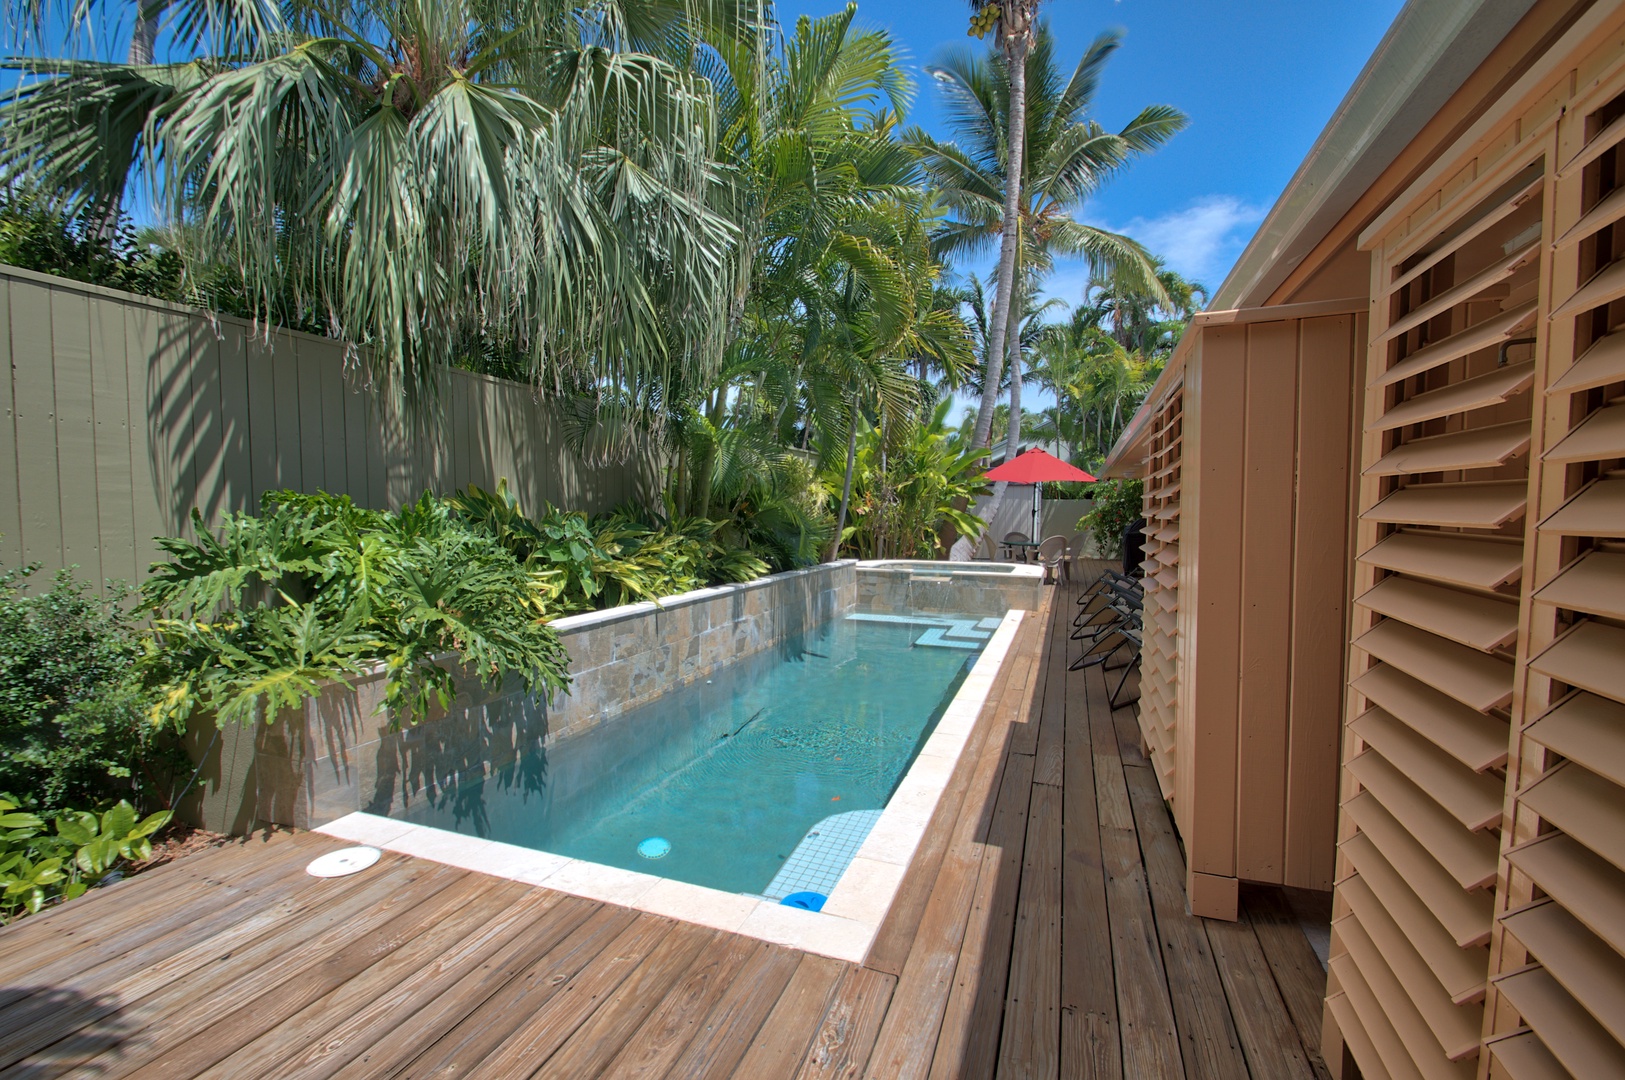 Private Pool Villa de Palmas Key West